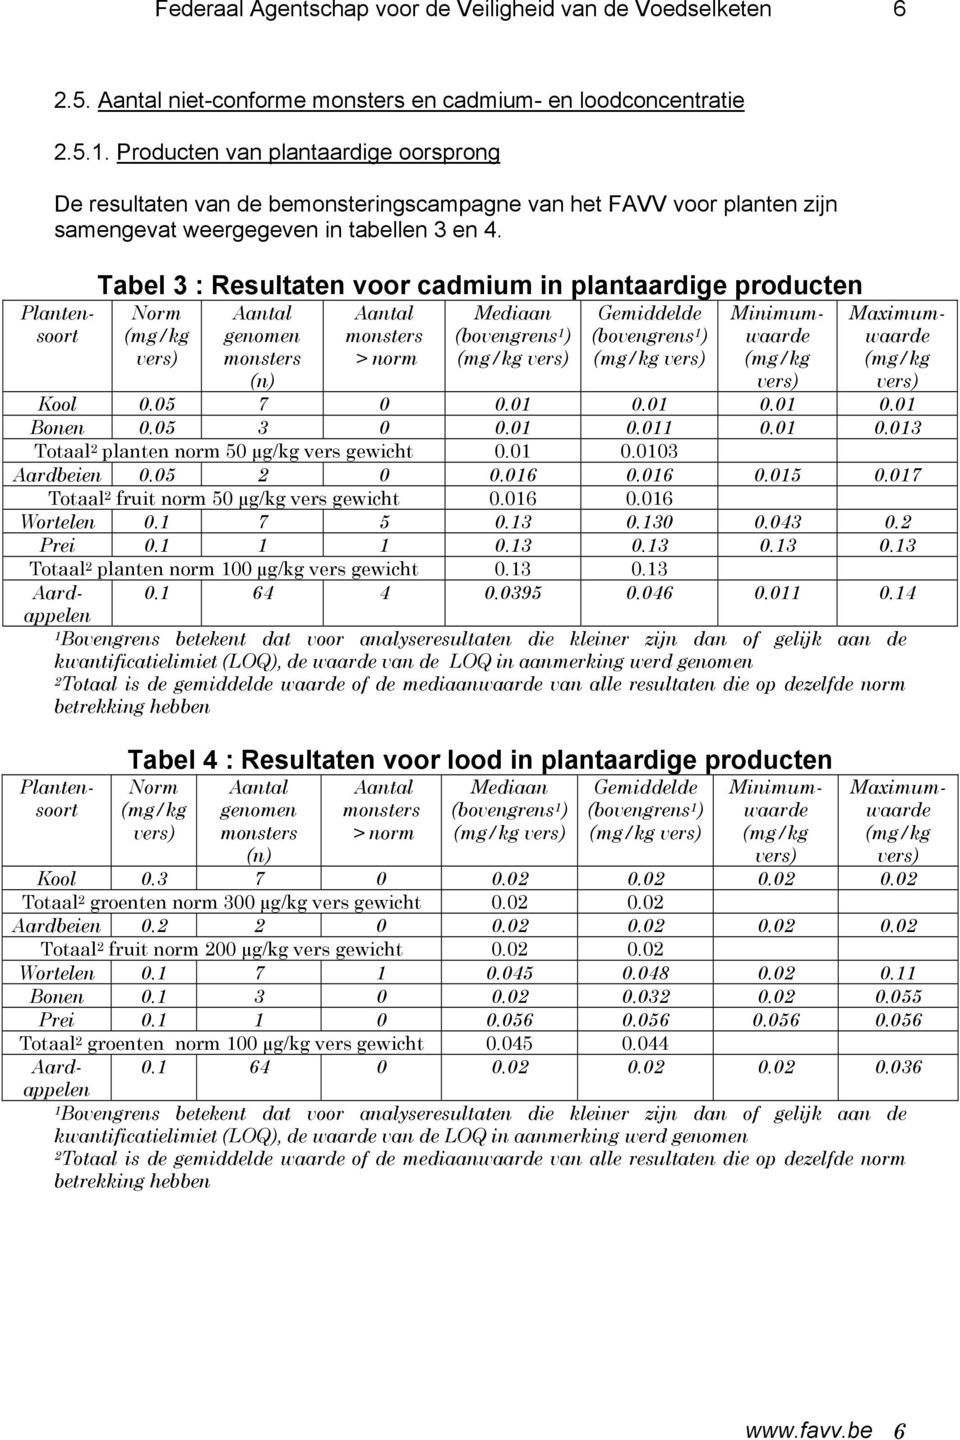 Tabel 3 : Resultaten voor cadmium in plantaardige producten Norm (mg/kg vers) Aantal genomen monsters (n) Aantal monsters > norm Mediaan (bovengrens 1 ) (mg/kg vers) Gemiddelde (bovengrens 1 ) (mg/kg